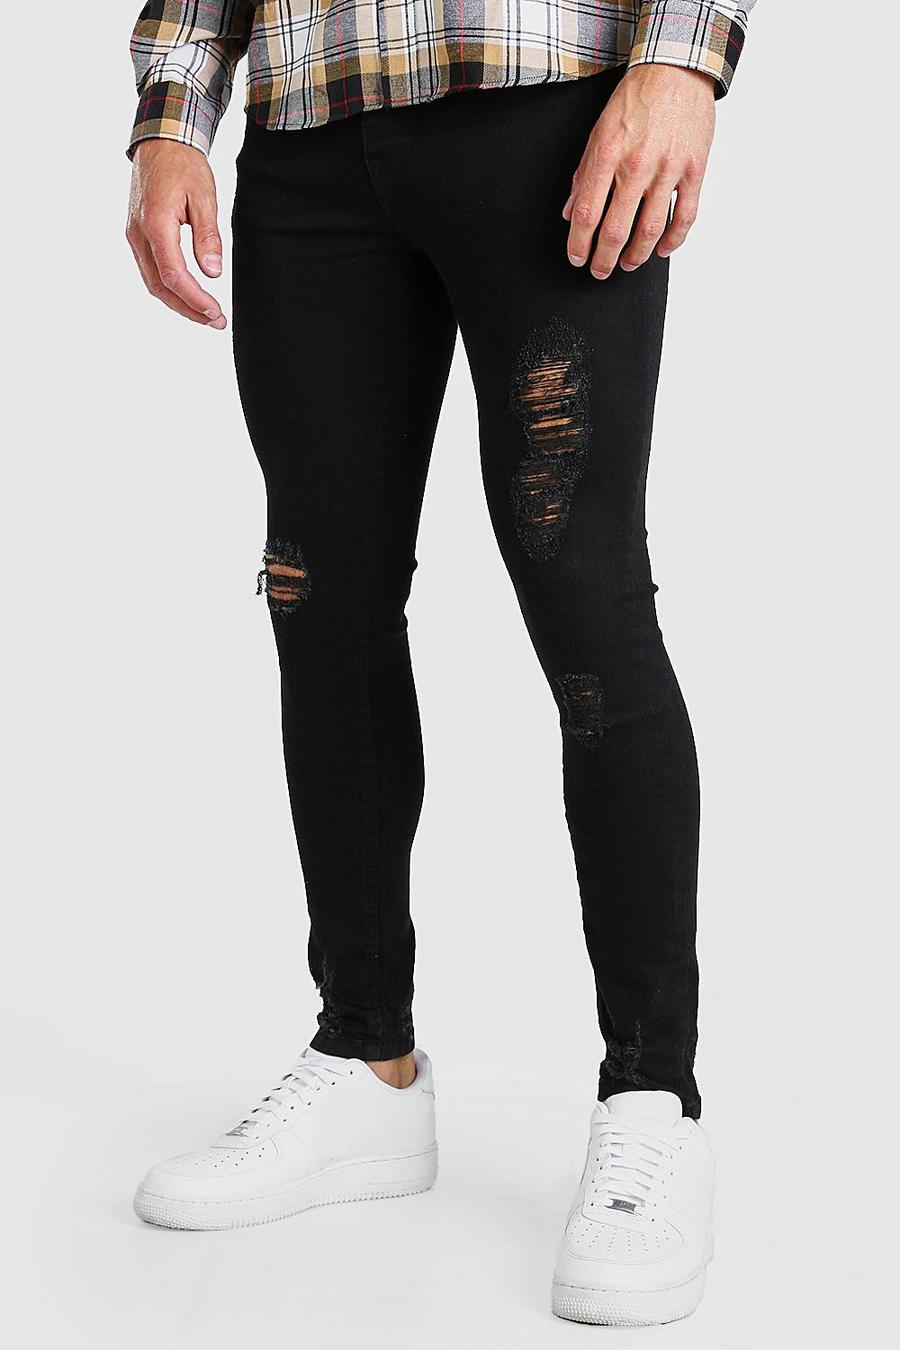 שחור דהוי סופר סקיני ג'ינס עם קרעים image number 1